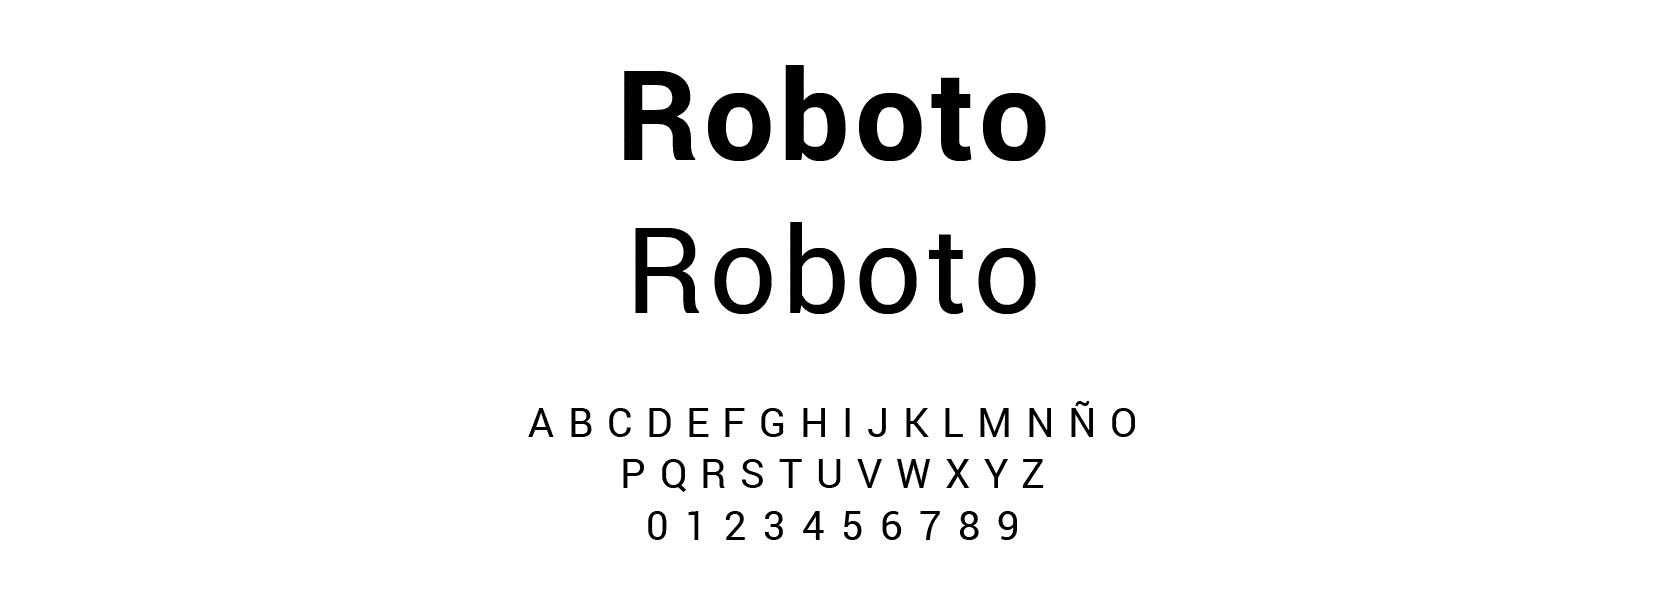 Roboto - Le journal Du Marketing